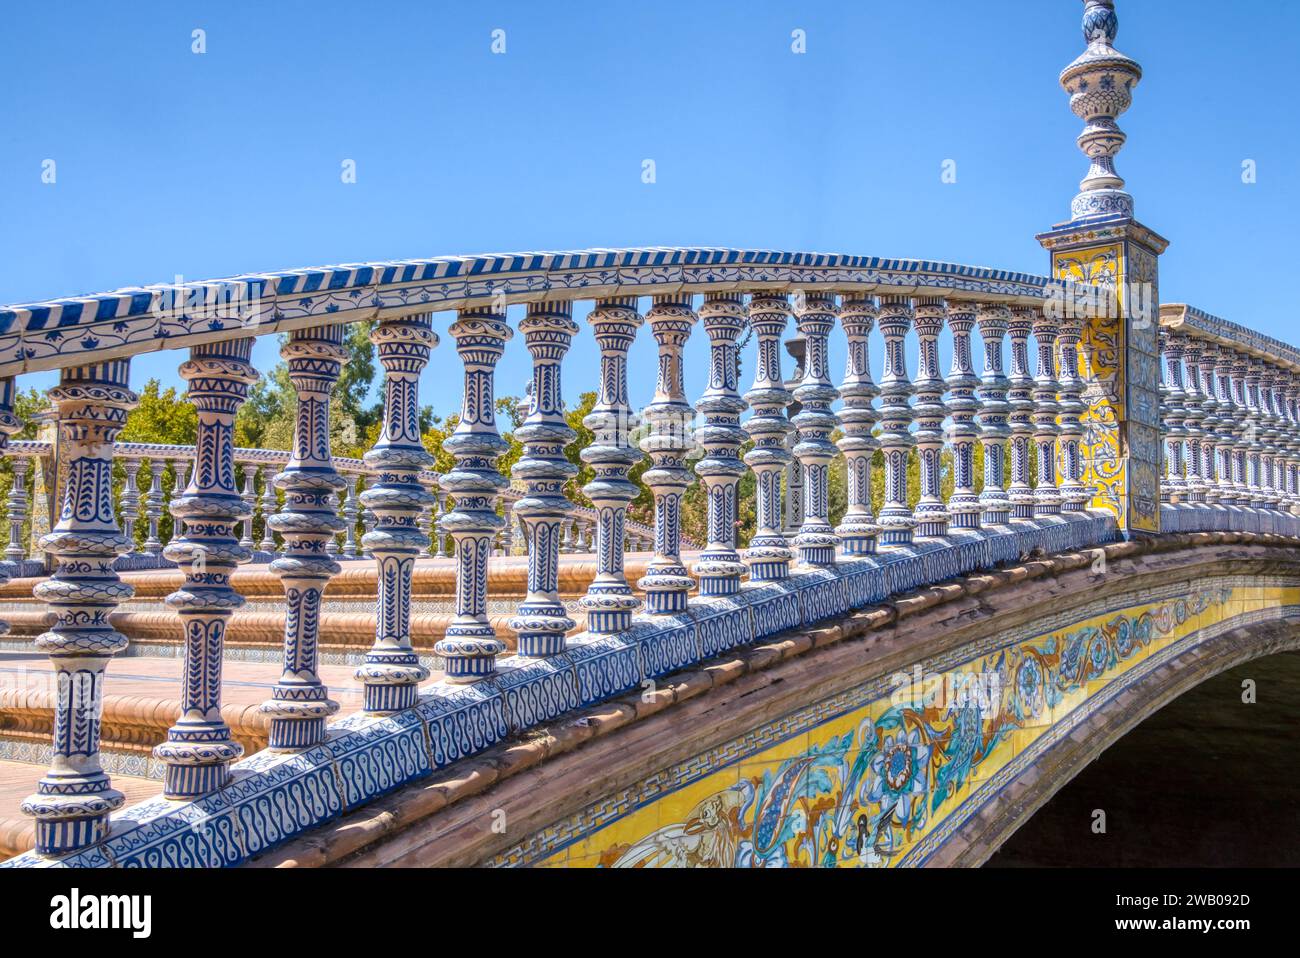 Wunderschönes Keramikgeländer an der Plaza de Espana in Sevilla, Spanien. Stockfoto